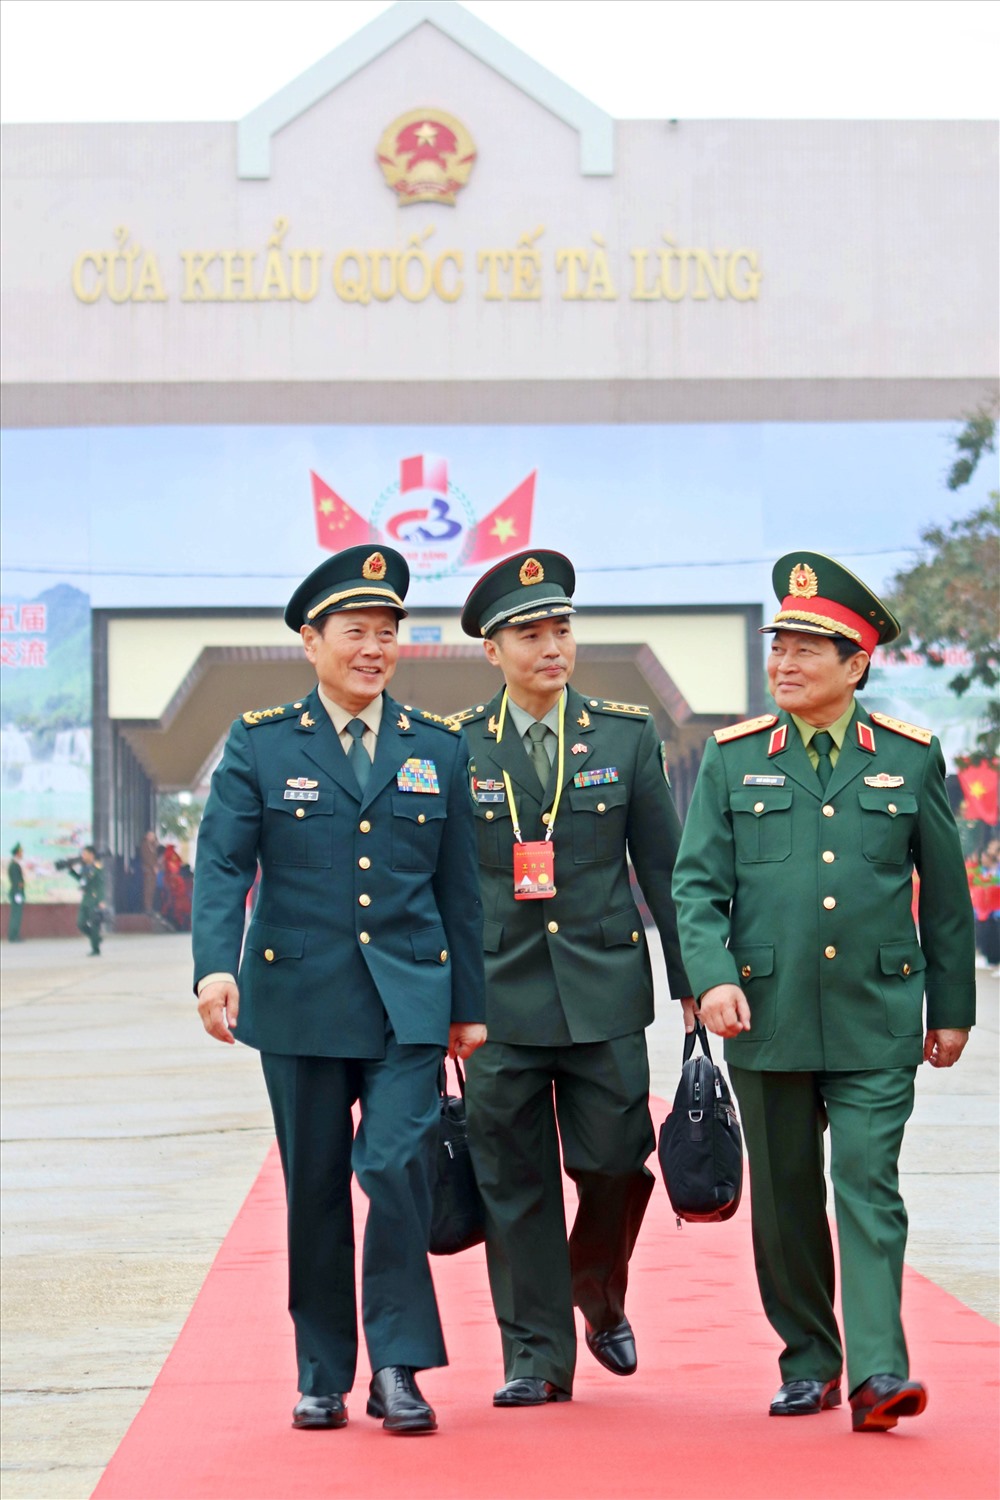 Đại tướng Ngô Xuân Lịch chủ trì lễ đón Thượng tướng Ngụy Phượng Hòa tại Cửa khẩu Quốc tế Tà Lùng, Cao Bằng, Việt Nam.